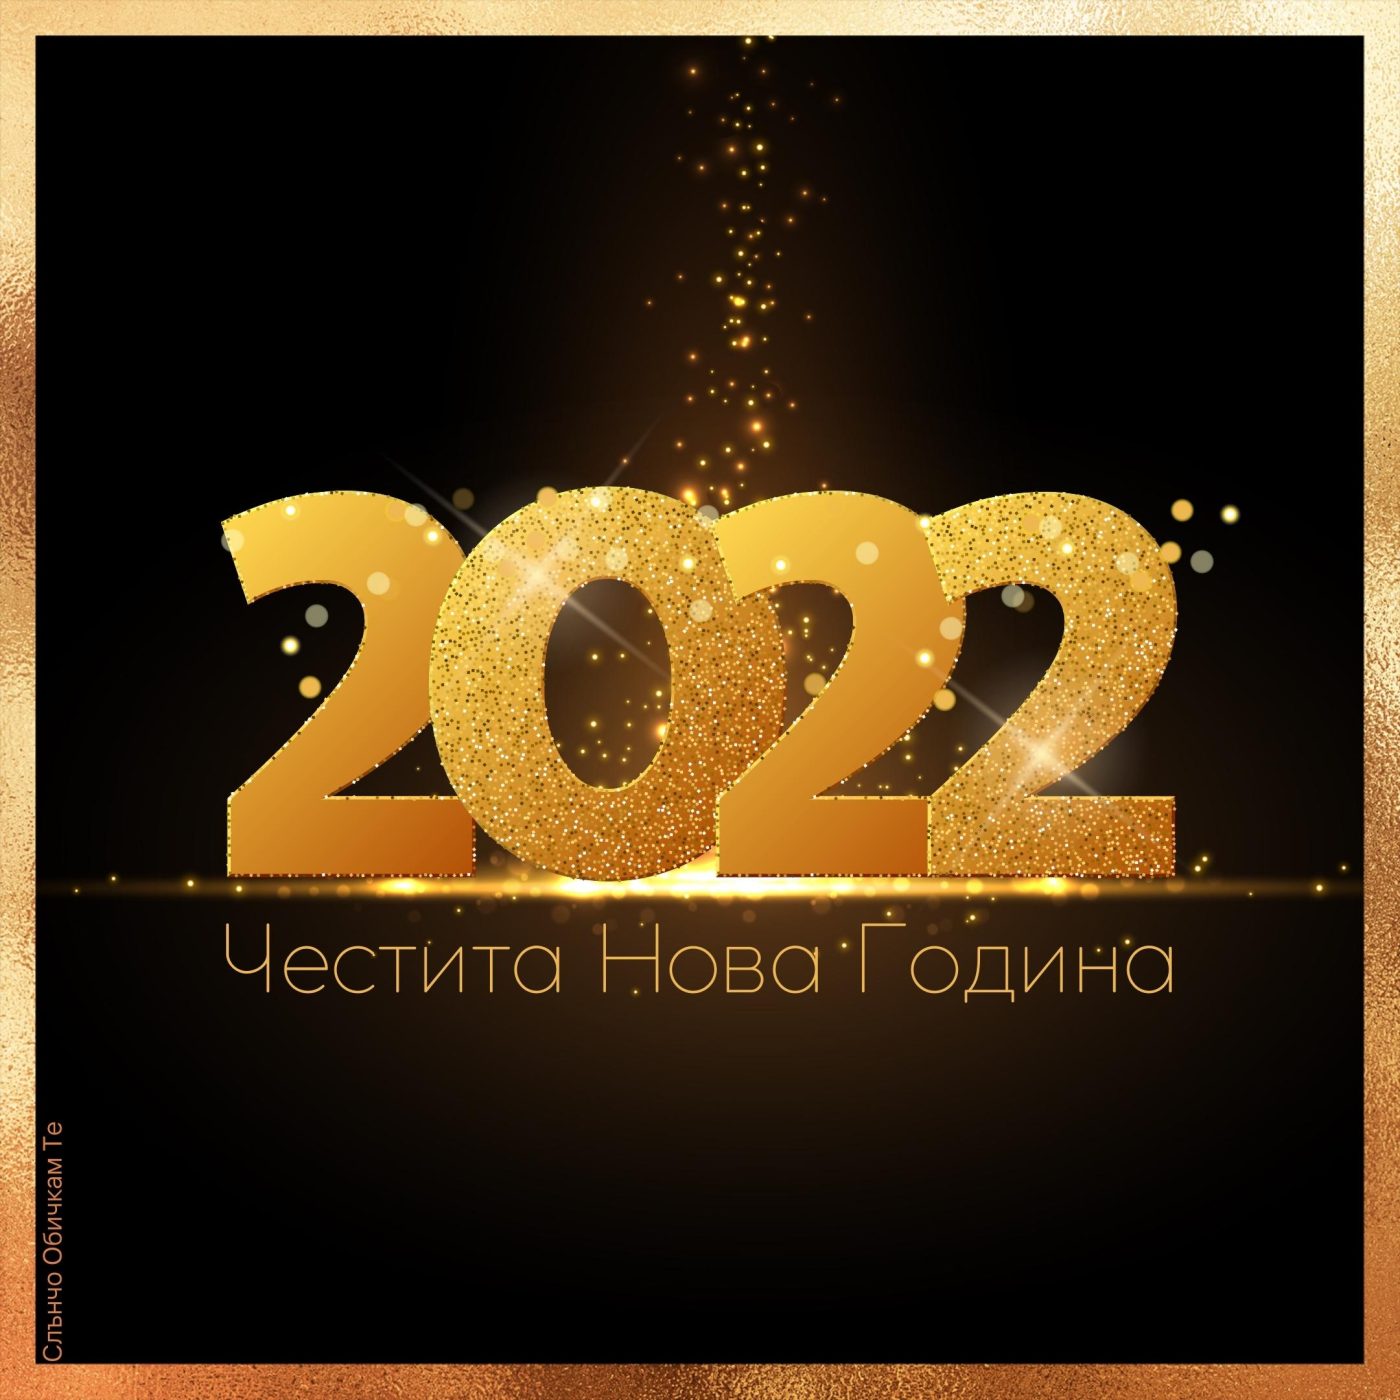 Нова година 2022 - Честита Нова година, картички за нова година, пожелания за новата година, за много години, щастлива нова година, слънчо обичкам те